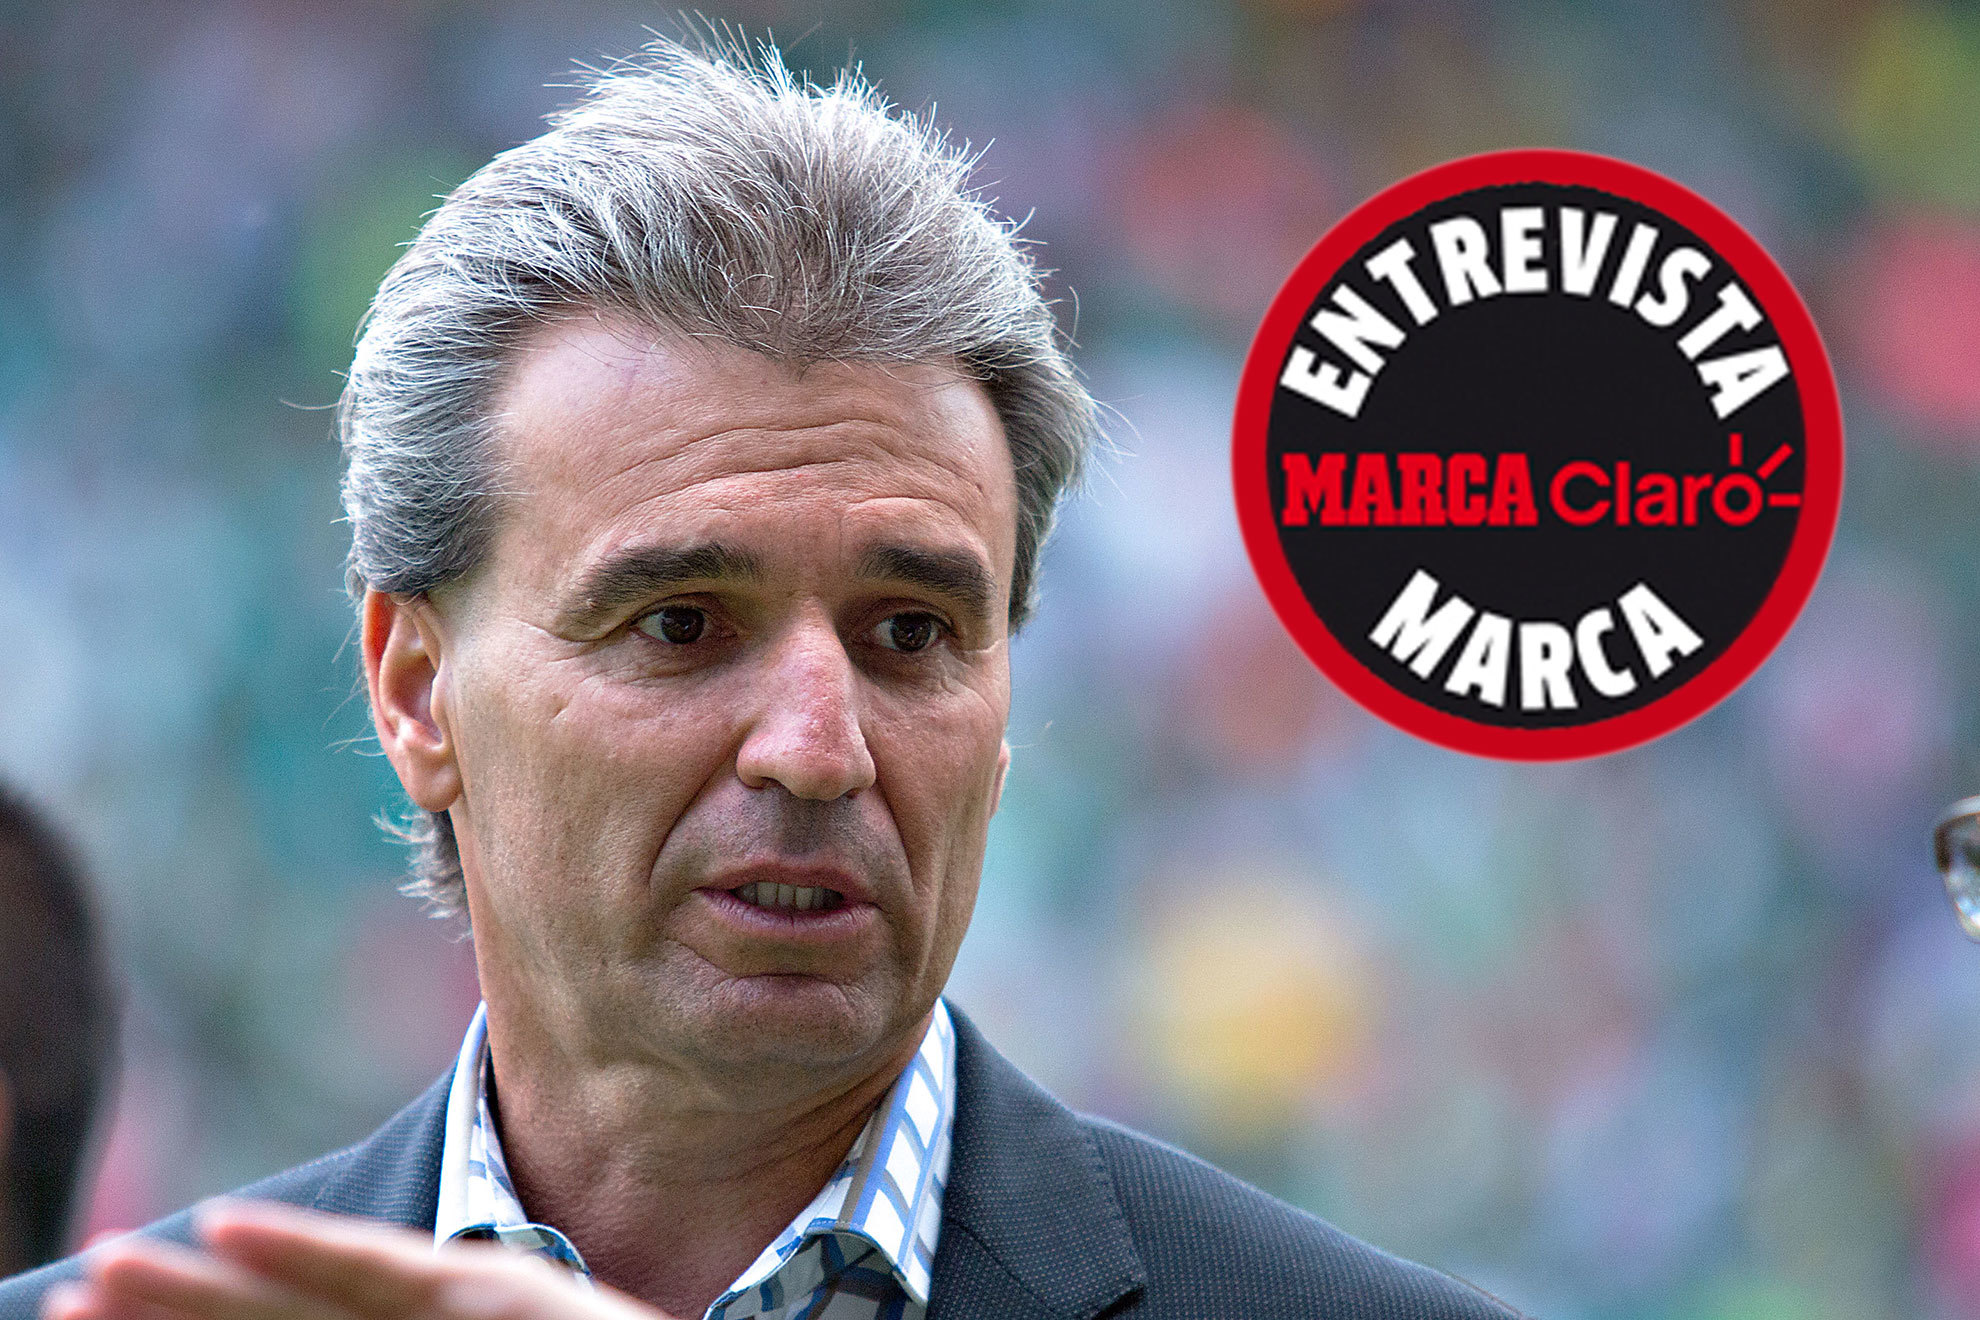 Néstor de la Torre analiza a la selección mexicana en el Mundial de Qatar 2022 en Radio MARCA Claro | Imago7